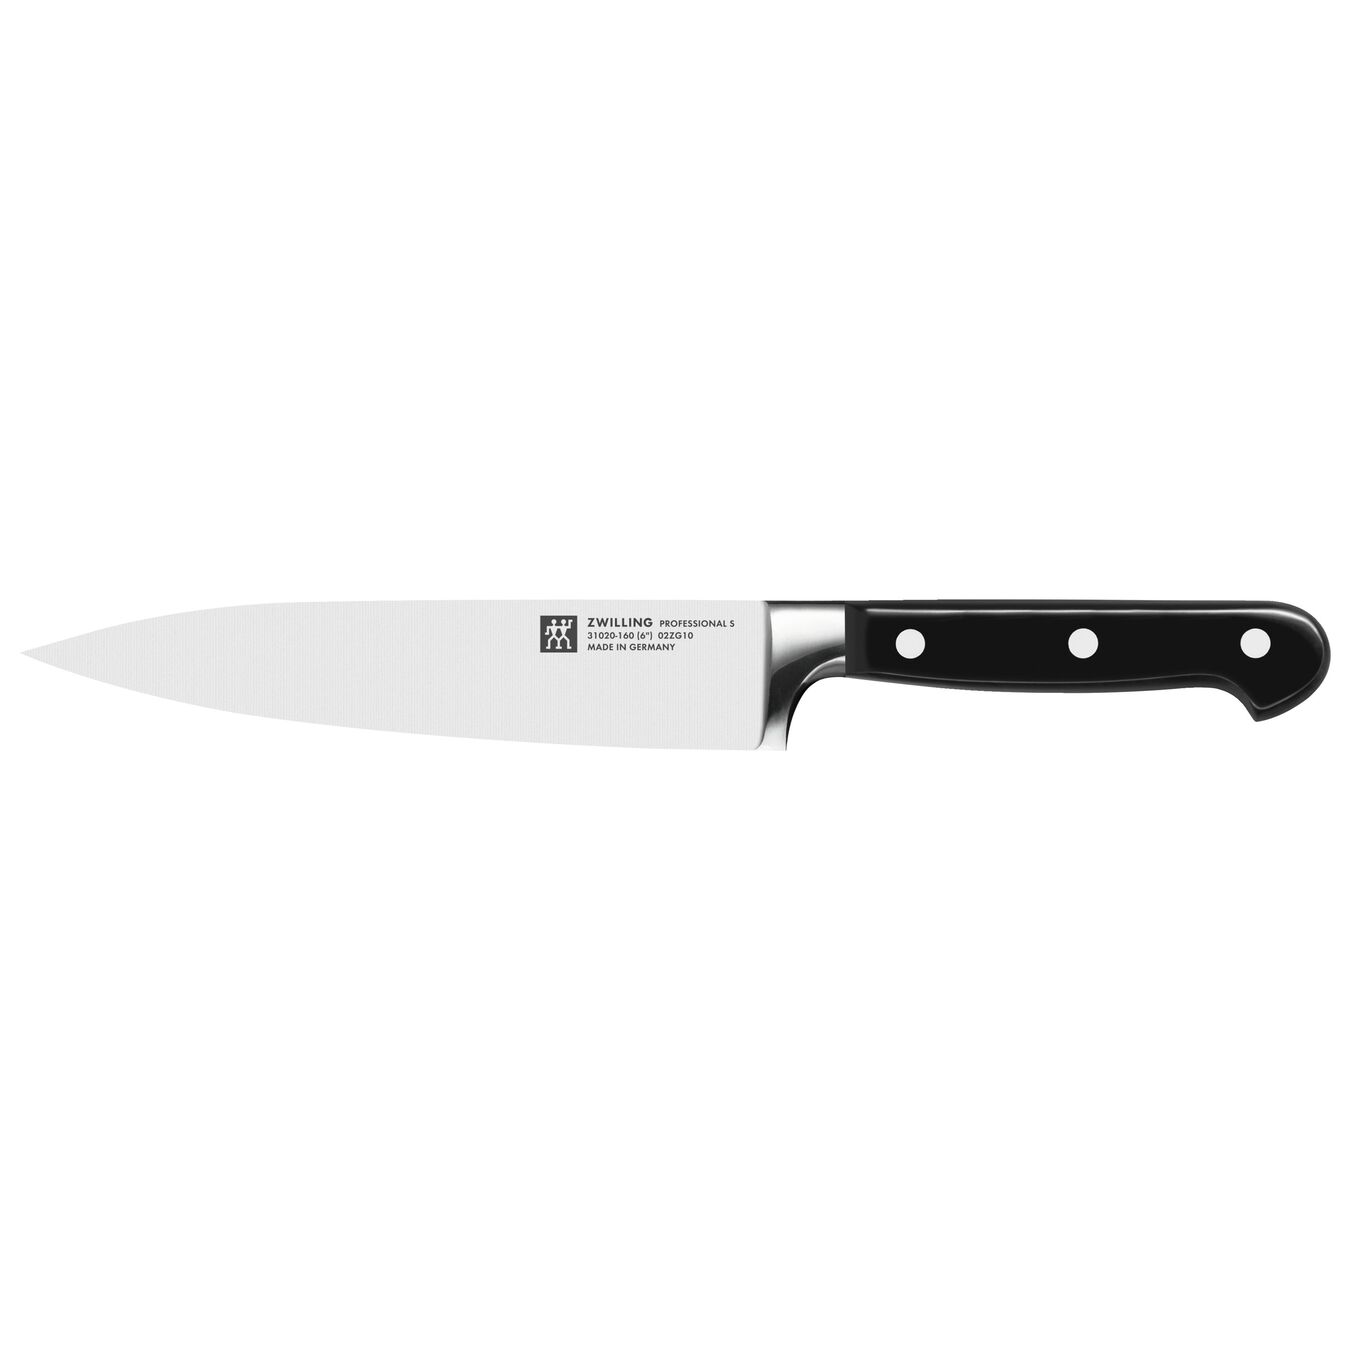 Dilimleme Bıçağı | Özel Formül Çelik | 16 cm,,large 1